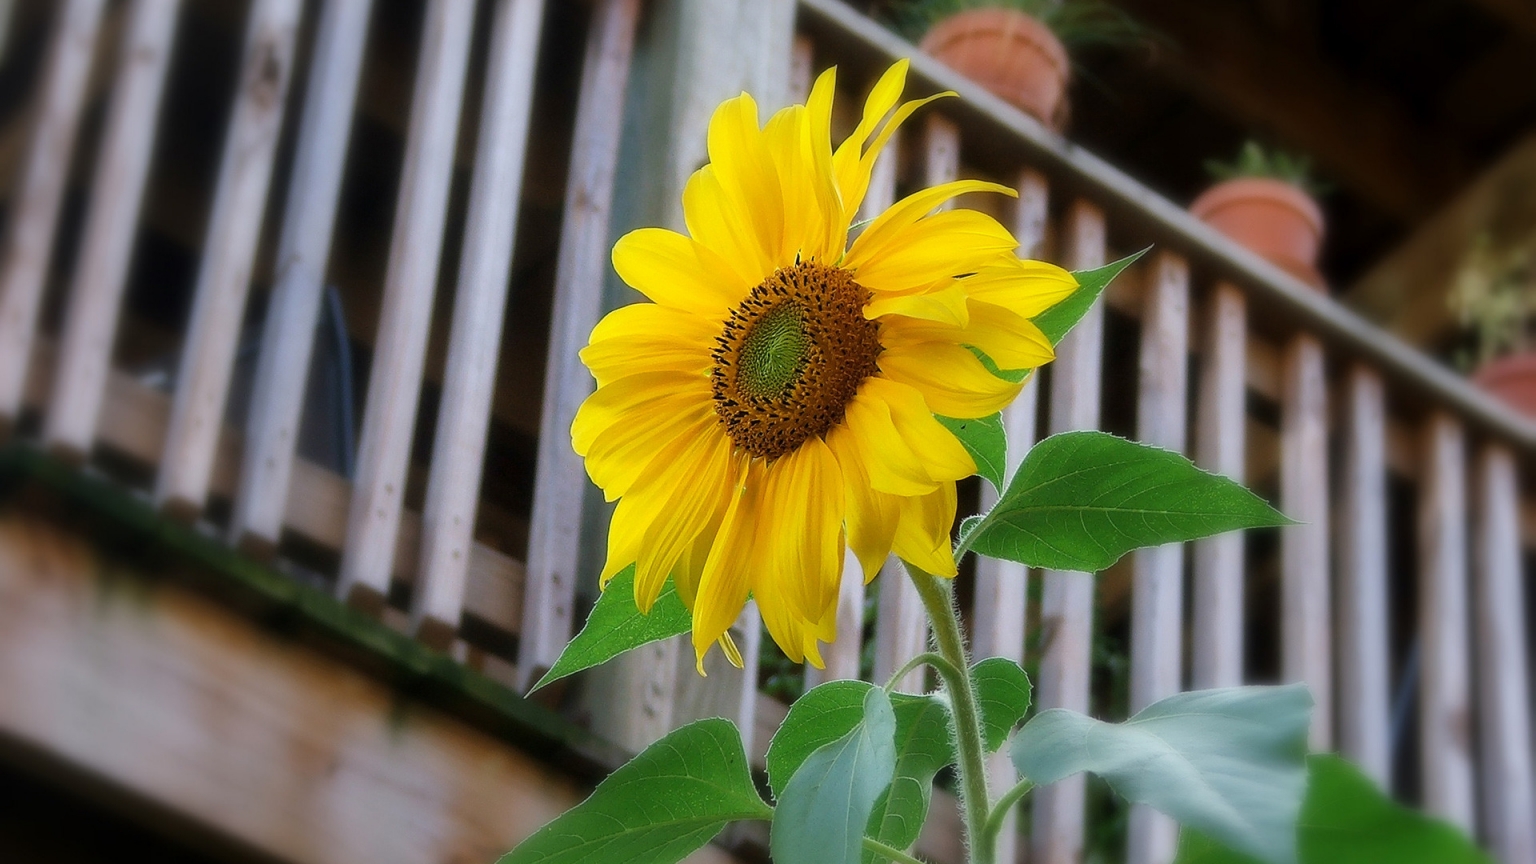 Sunflower for 1536 x 864 HDTV resolution